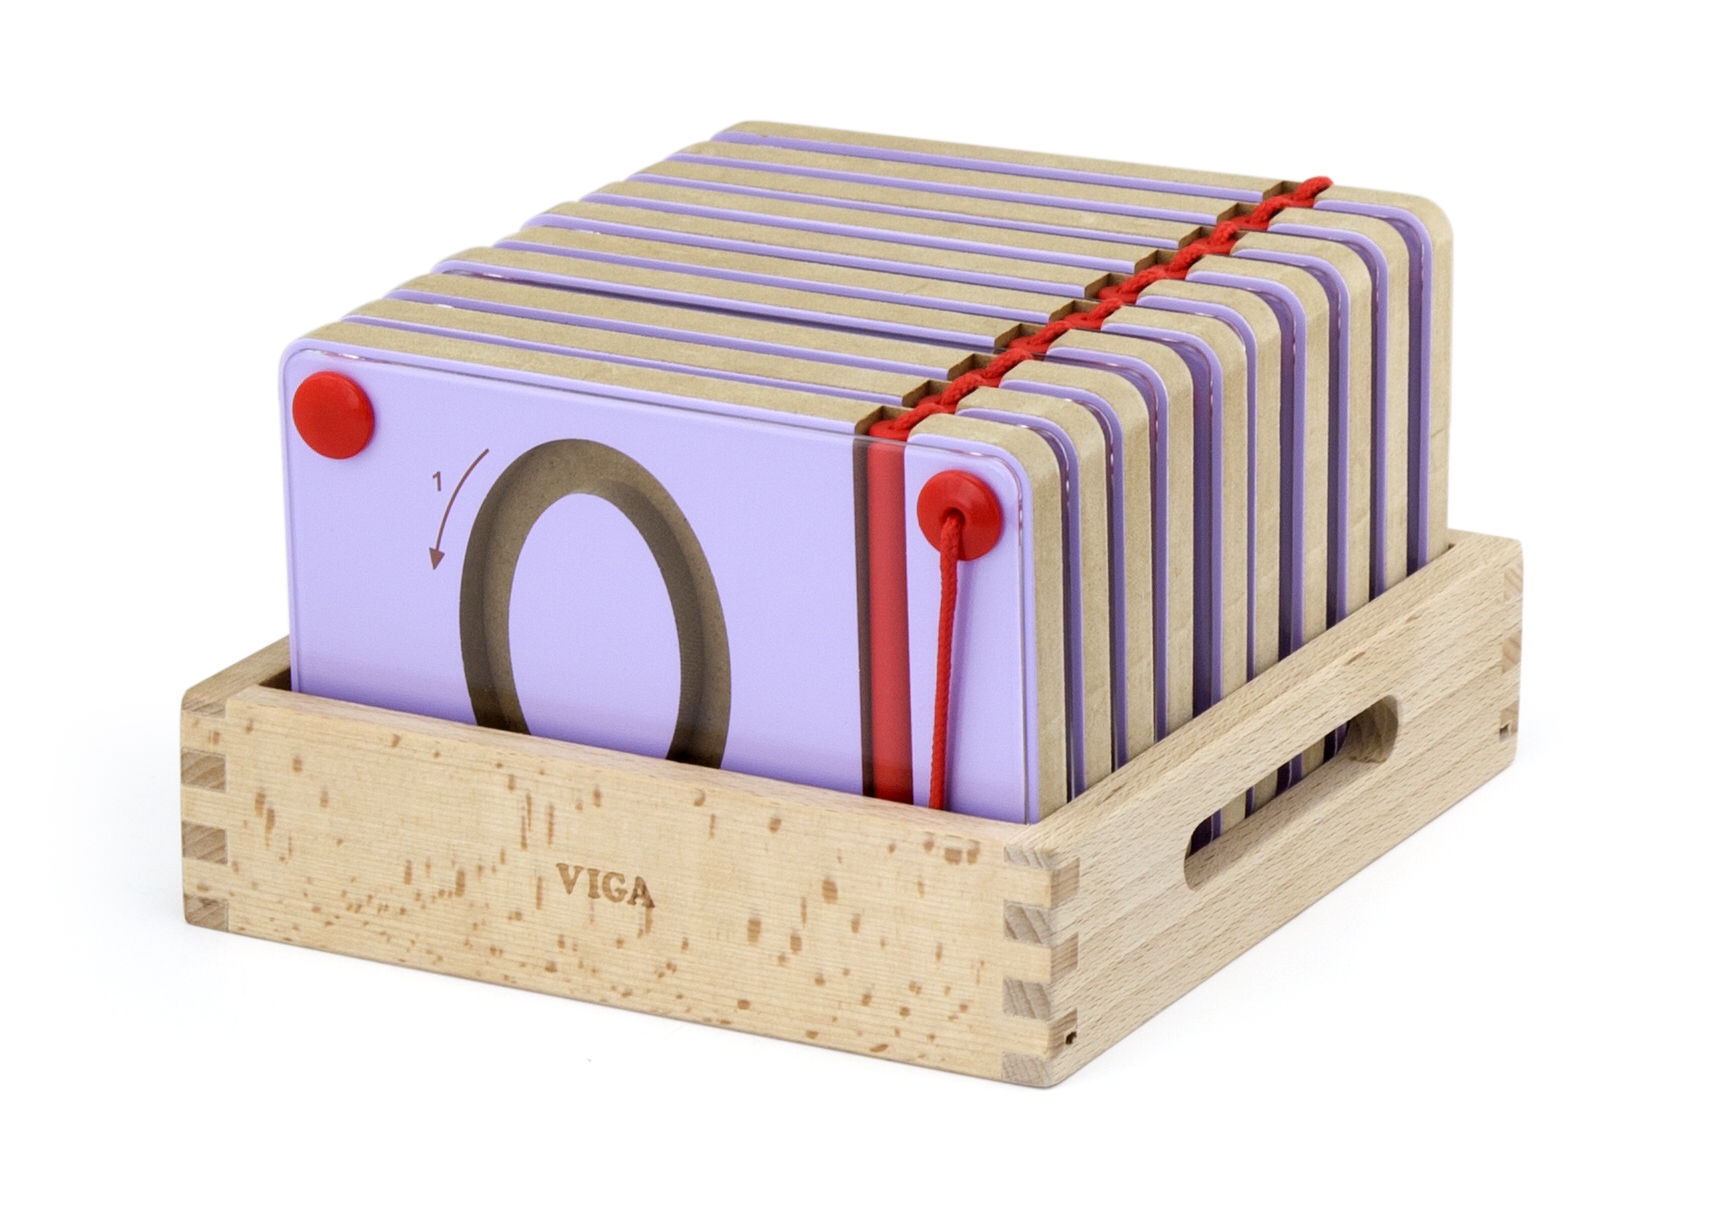 Tabliczki magnetyczne nauka pisania cyferki Viga Toys Montessori, zabawka dla dzieci